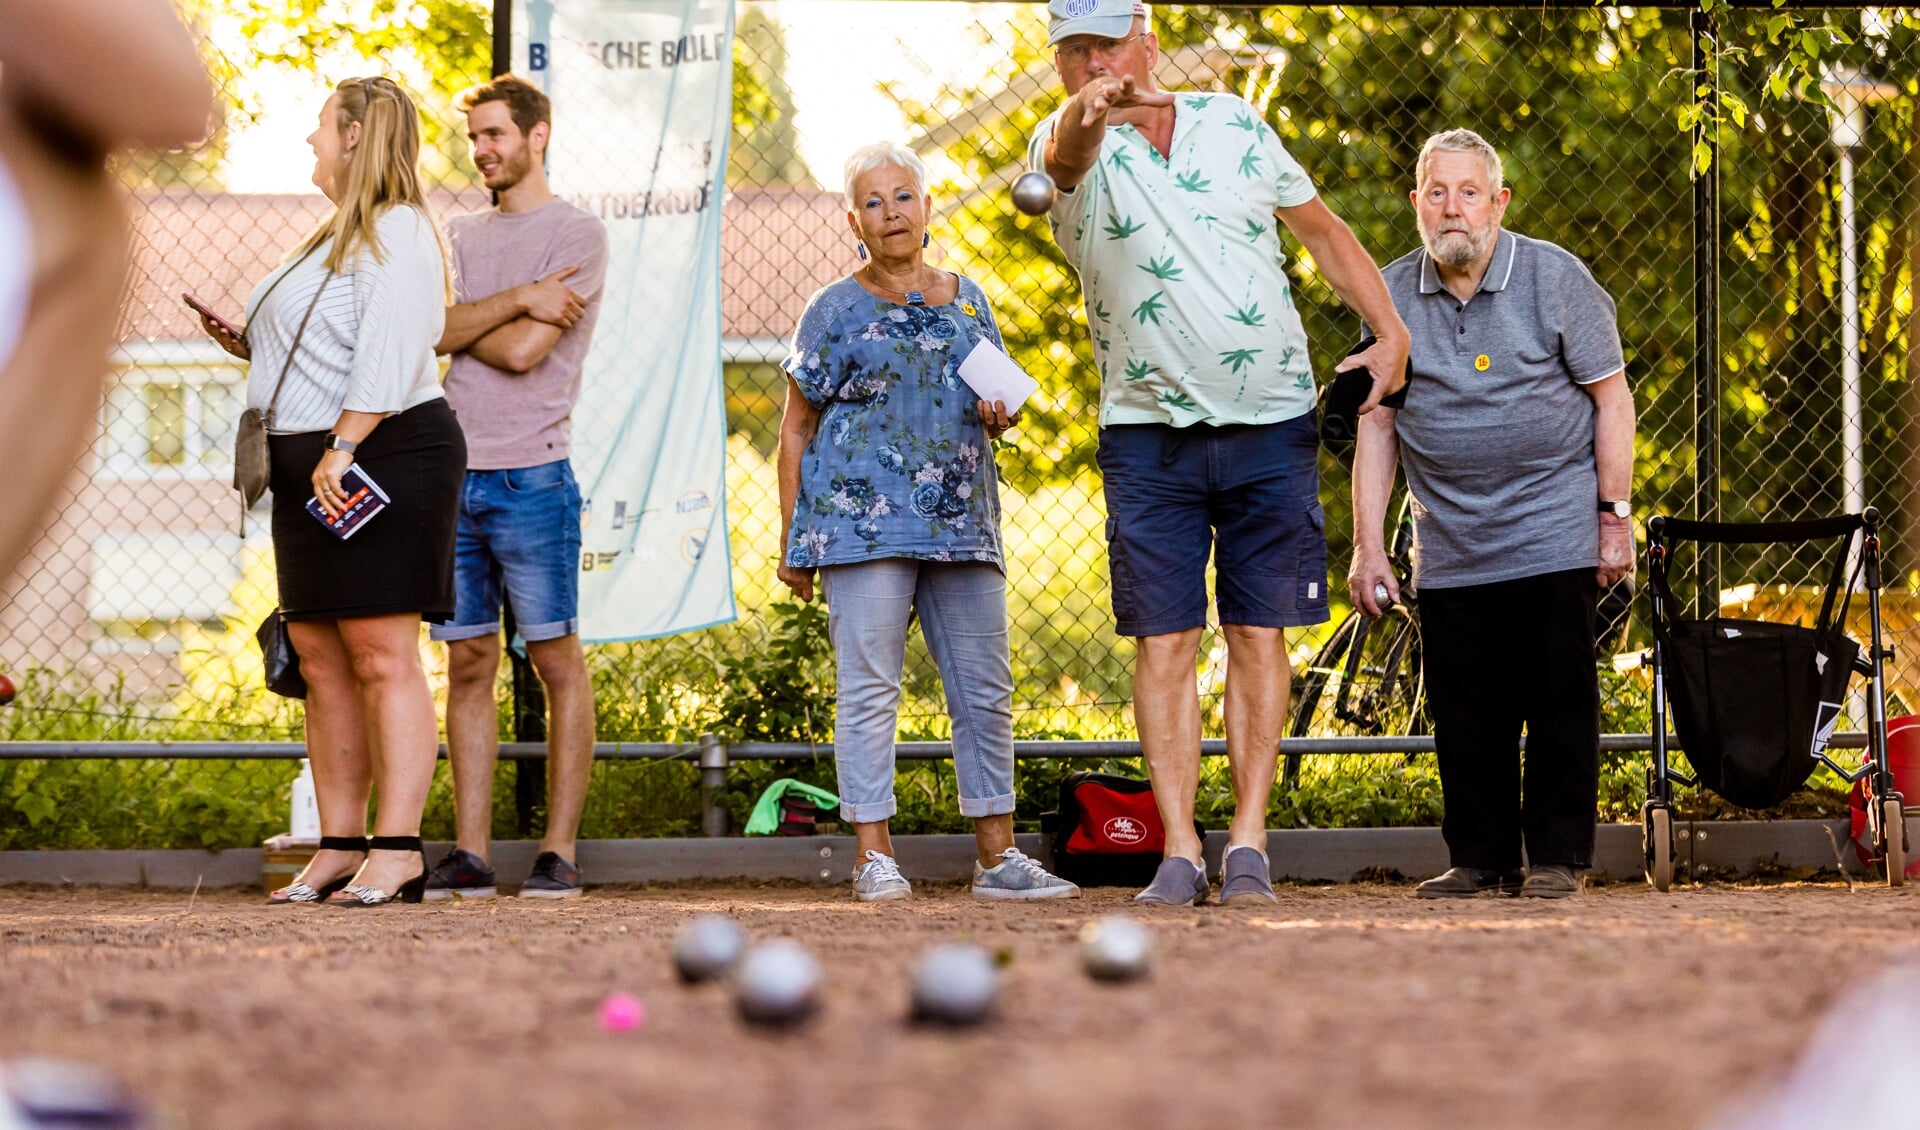 De gemeente constateert dat ouderen boven de 65 jaar zeer weinig deelnemen aan sportactiviteiten. Daarom is er een speciale methodiek ontwikkeld voor ouderen vanaf 60 jaar.